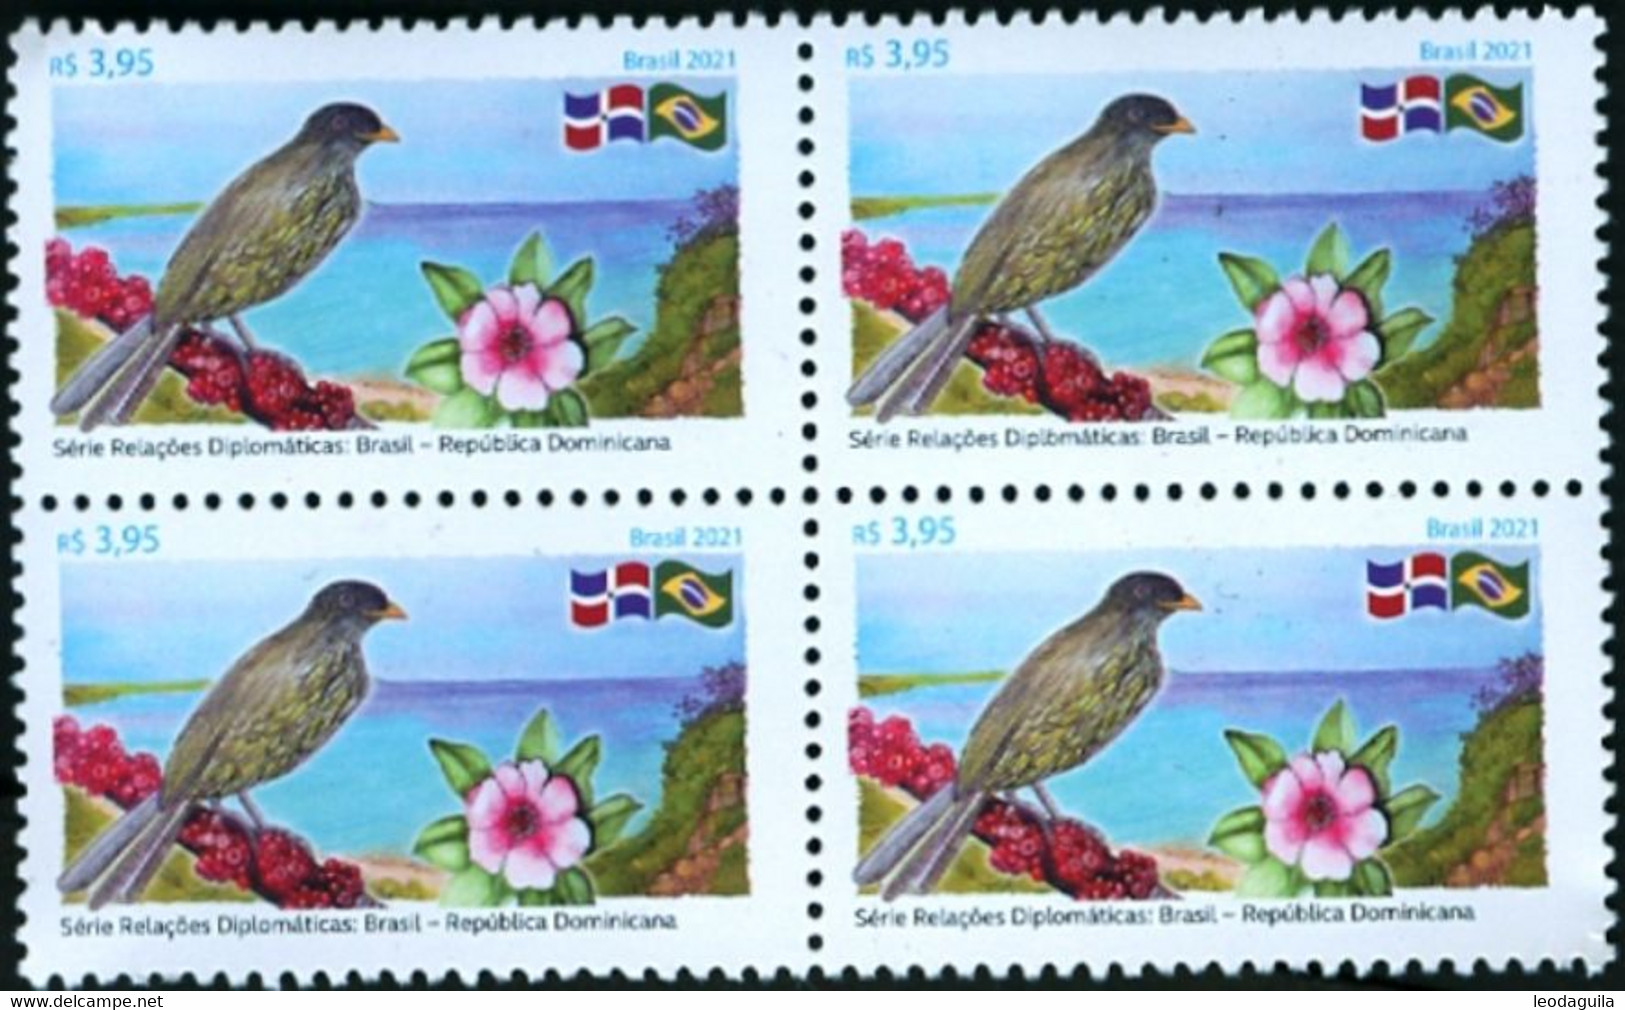 BRAZIL #4816 - BIRD PALMCHAT / CIGUA PALMERA  - LANDSCAPE - FLOWER  - BLOCK OF 4  - 2021 - MINT - Nuovi